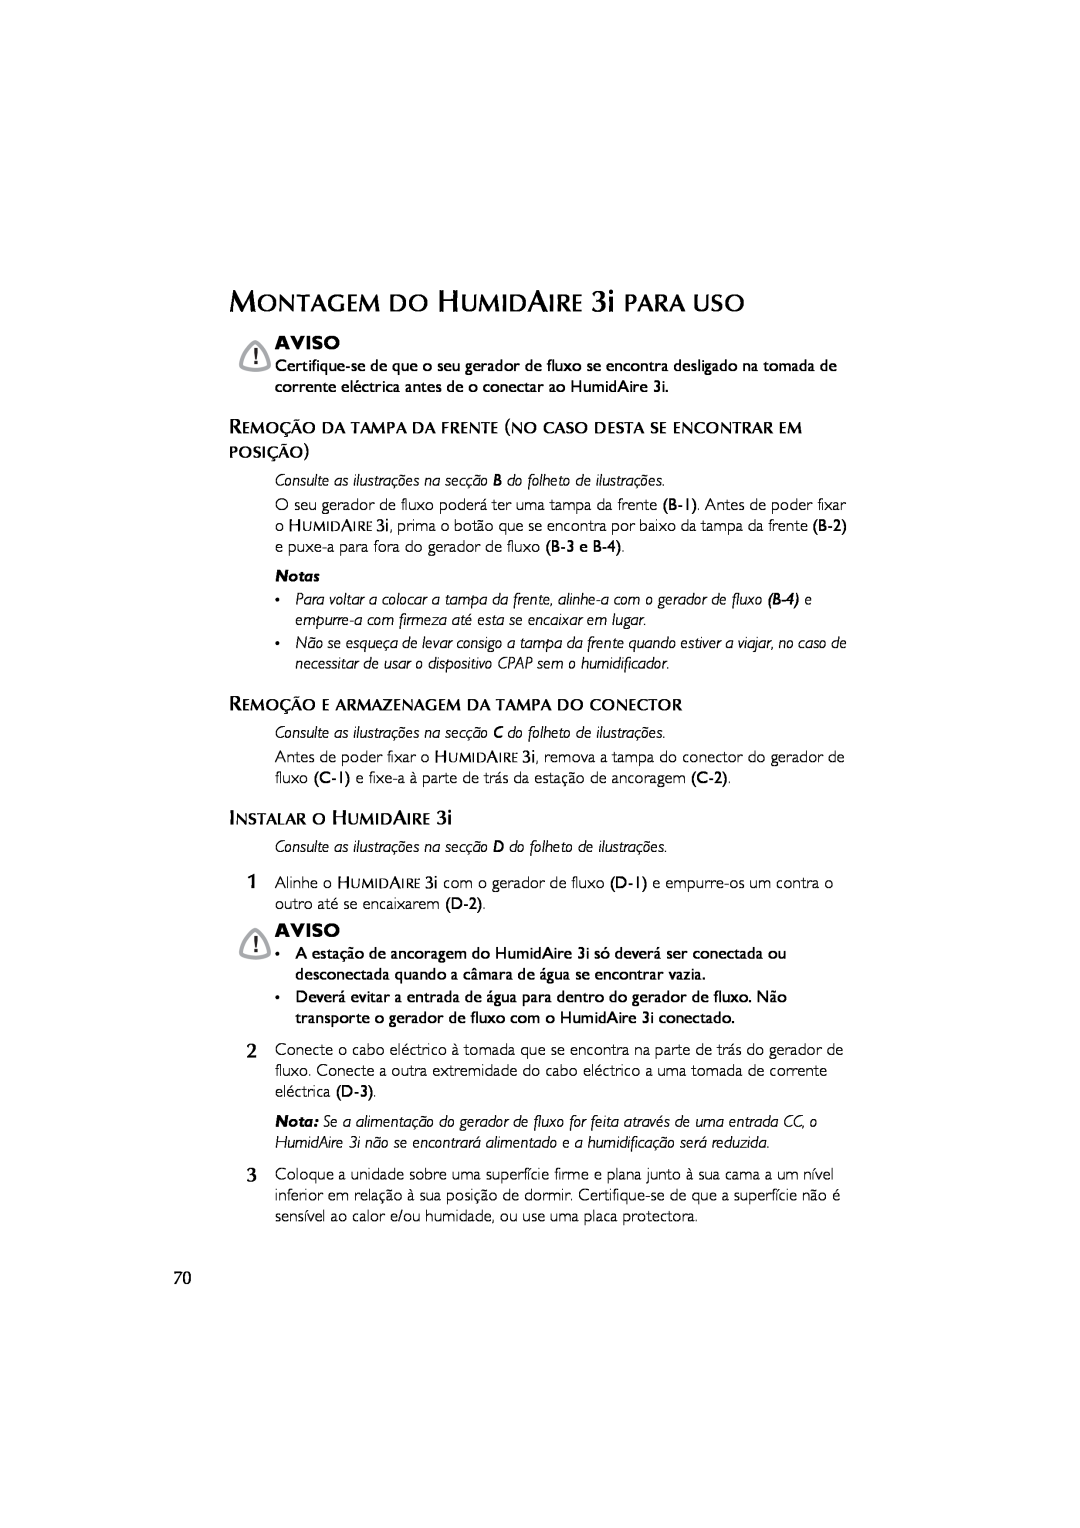 ResMed 3I user manual MONTAGEM DO HUMIDAIRE 3i PARA USO, Aviso, Notas 